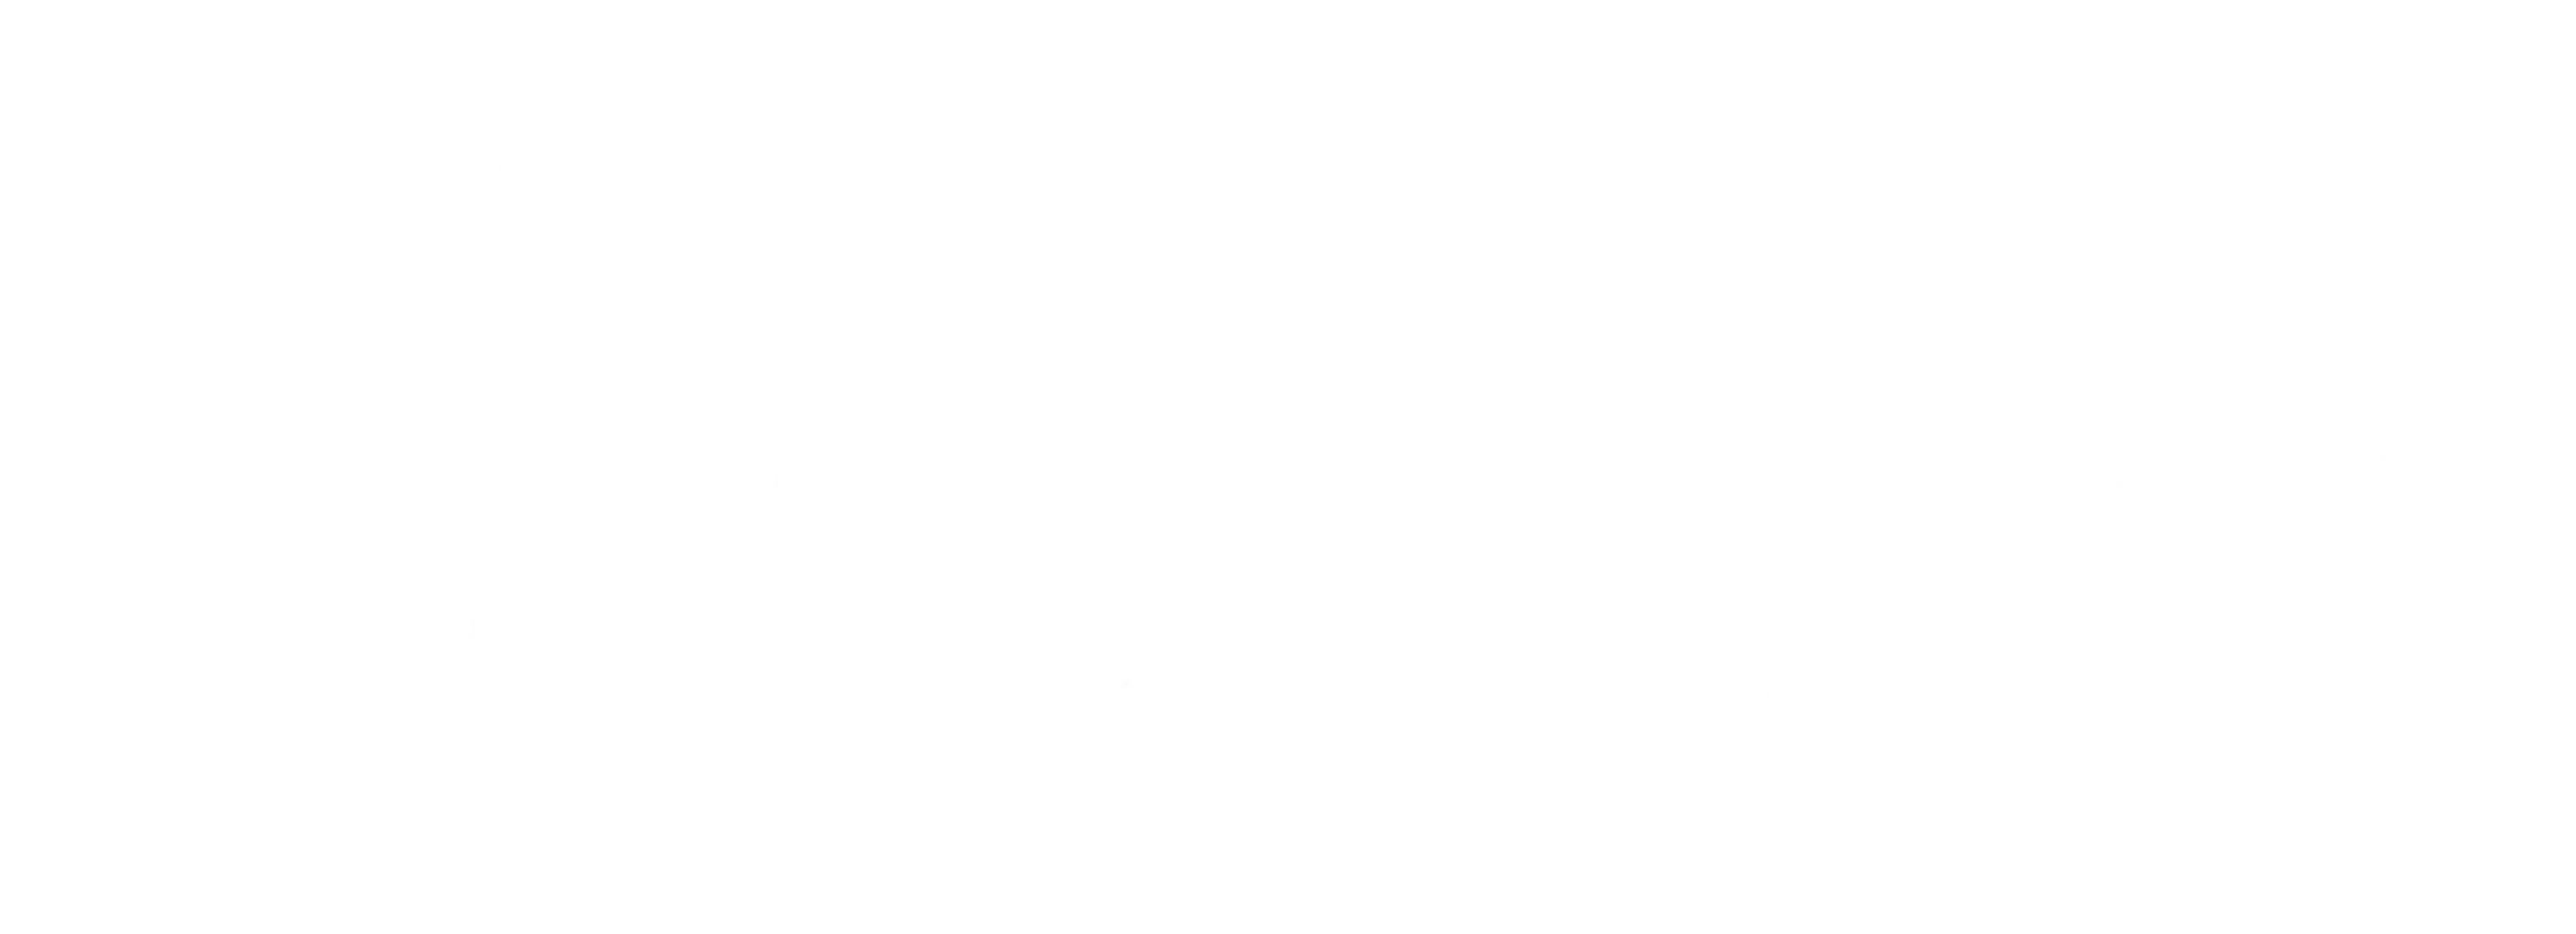 Philippine Women logo white version